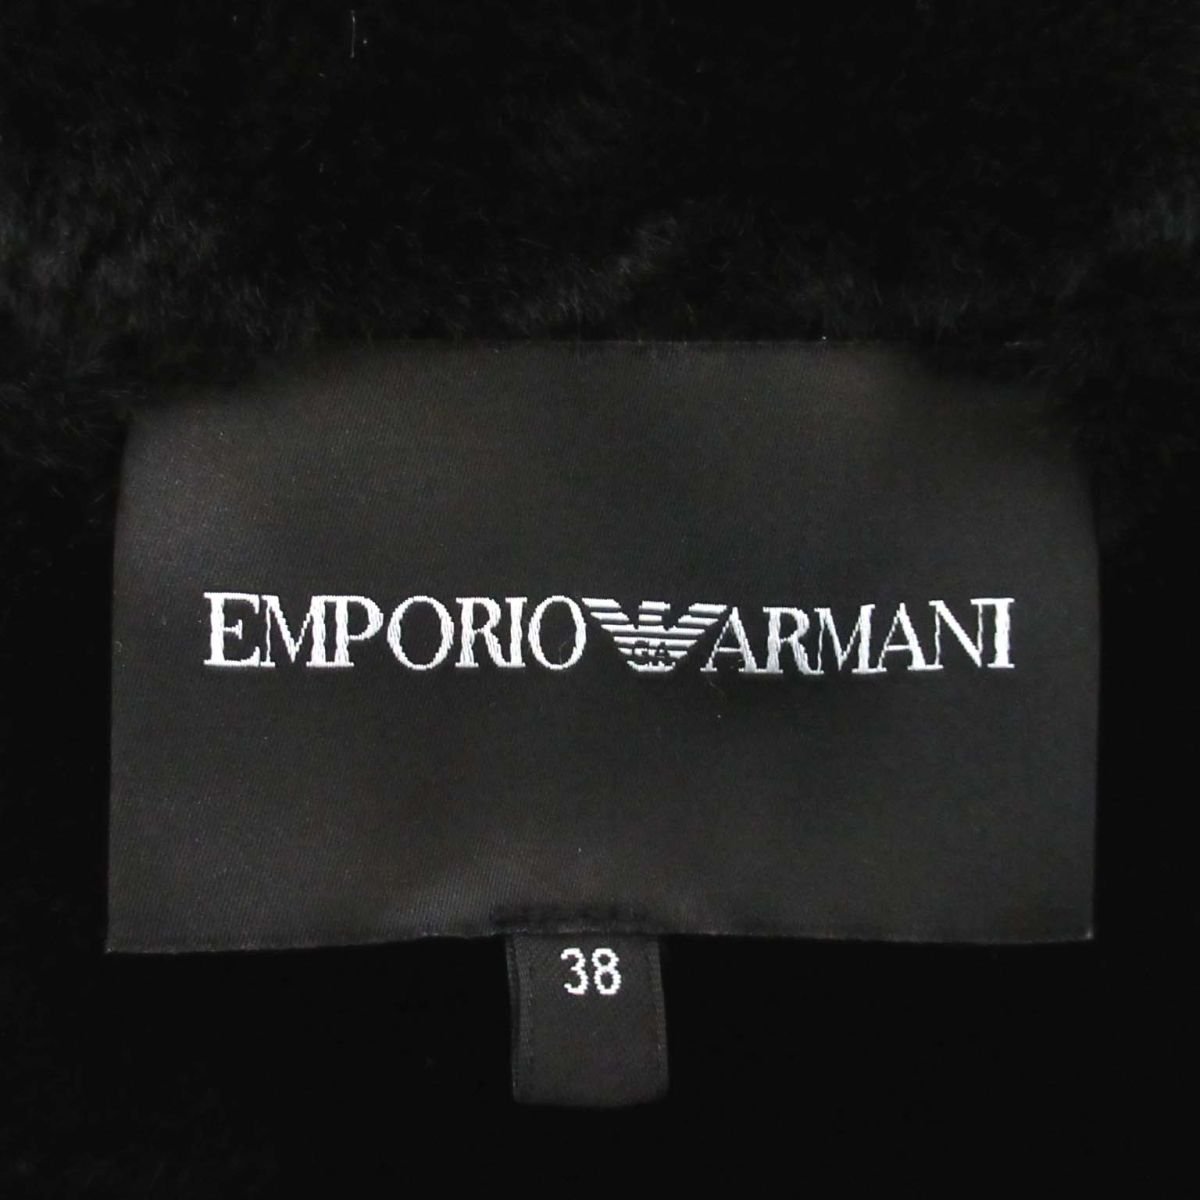  прекрасный товар 2021 год модели Emporio Armani reta кольцо принт обратная сторона боа Zip выше f-ti- жакет 38 серый × оттенок черного C1002